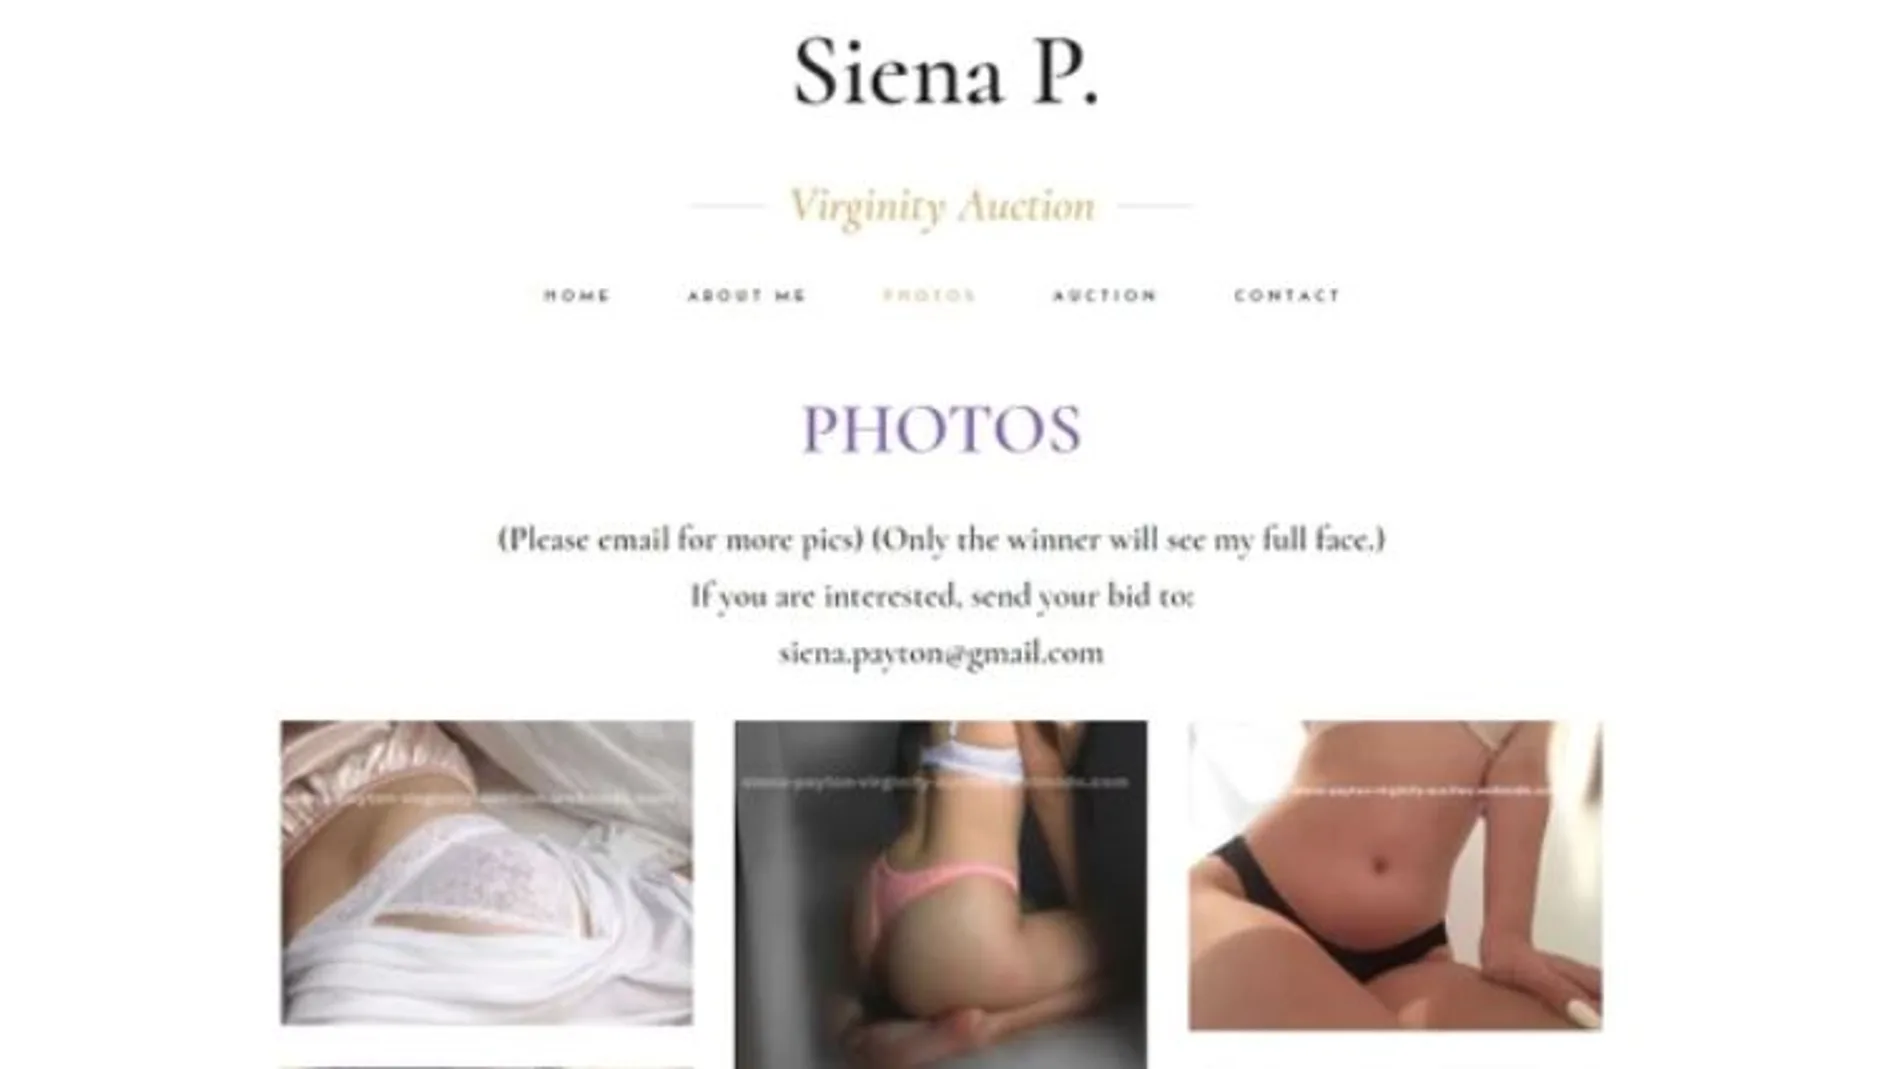 Captura de la página web donde la joven subasta su virginidad